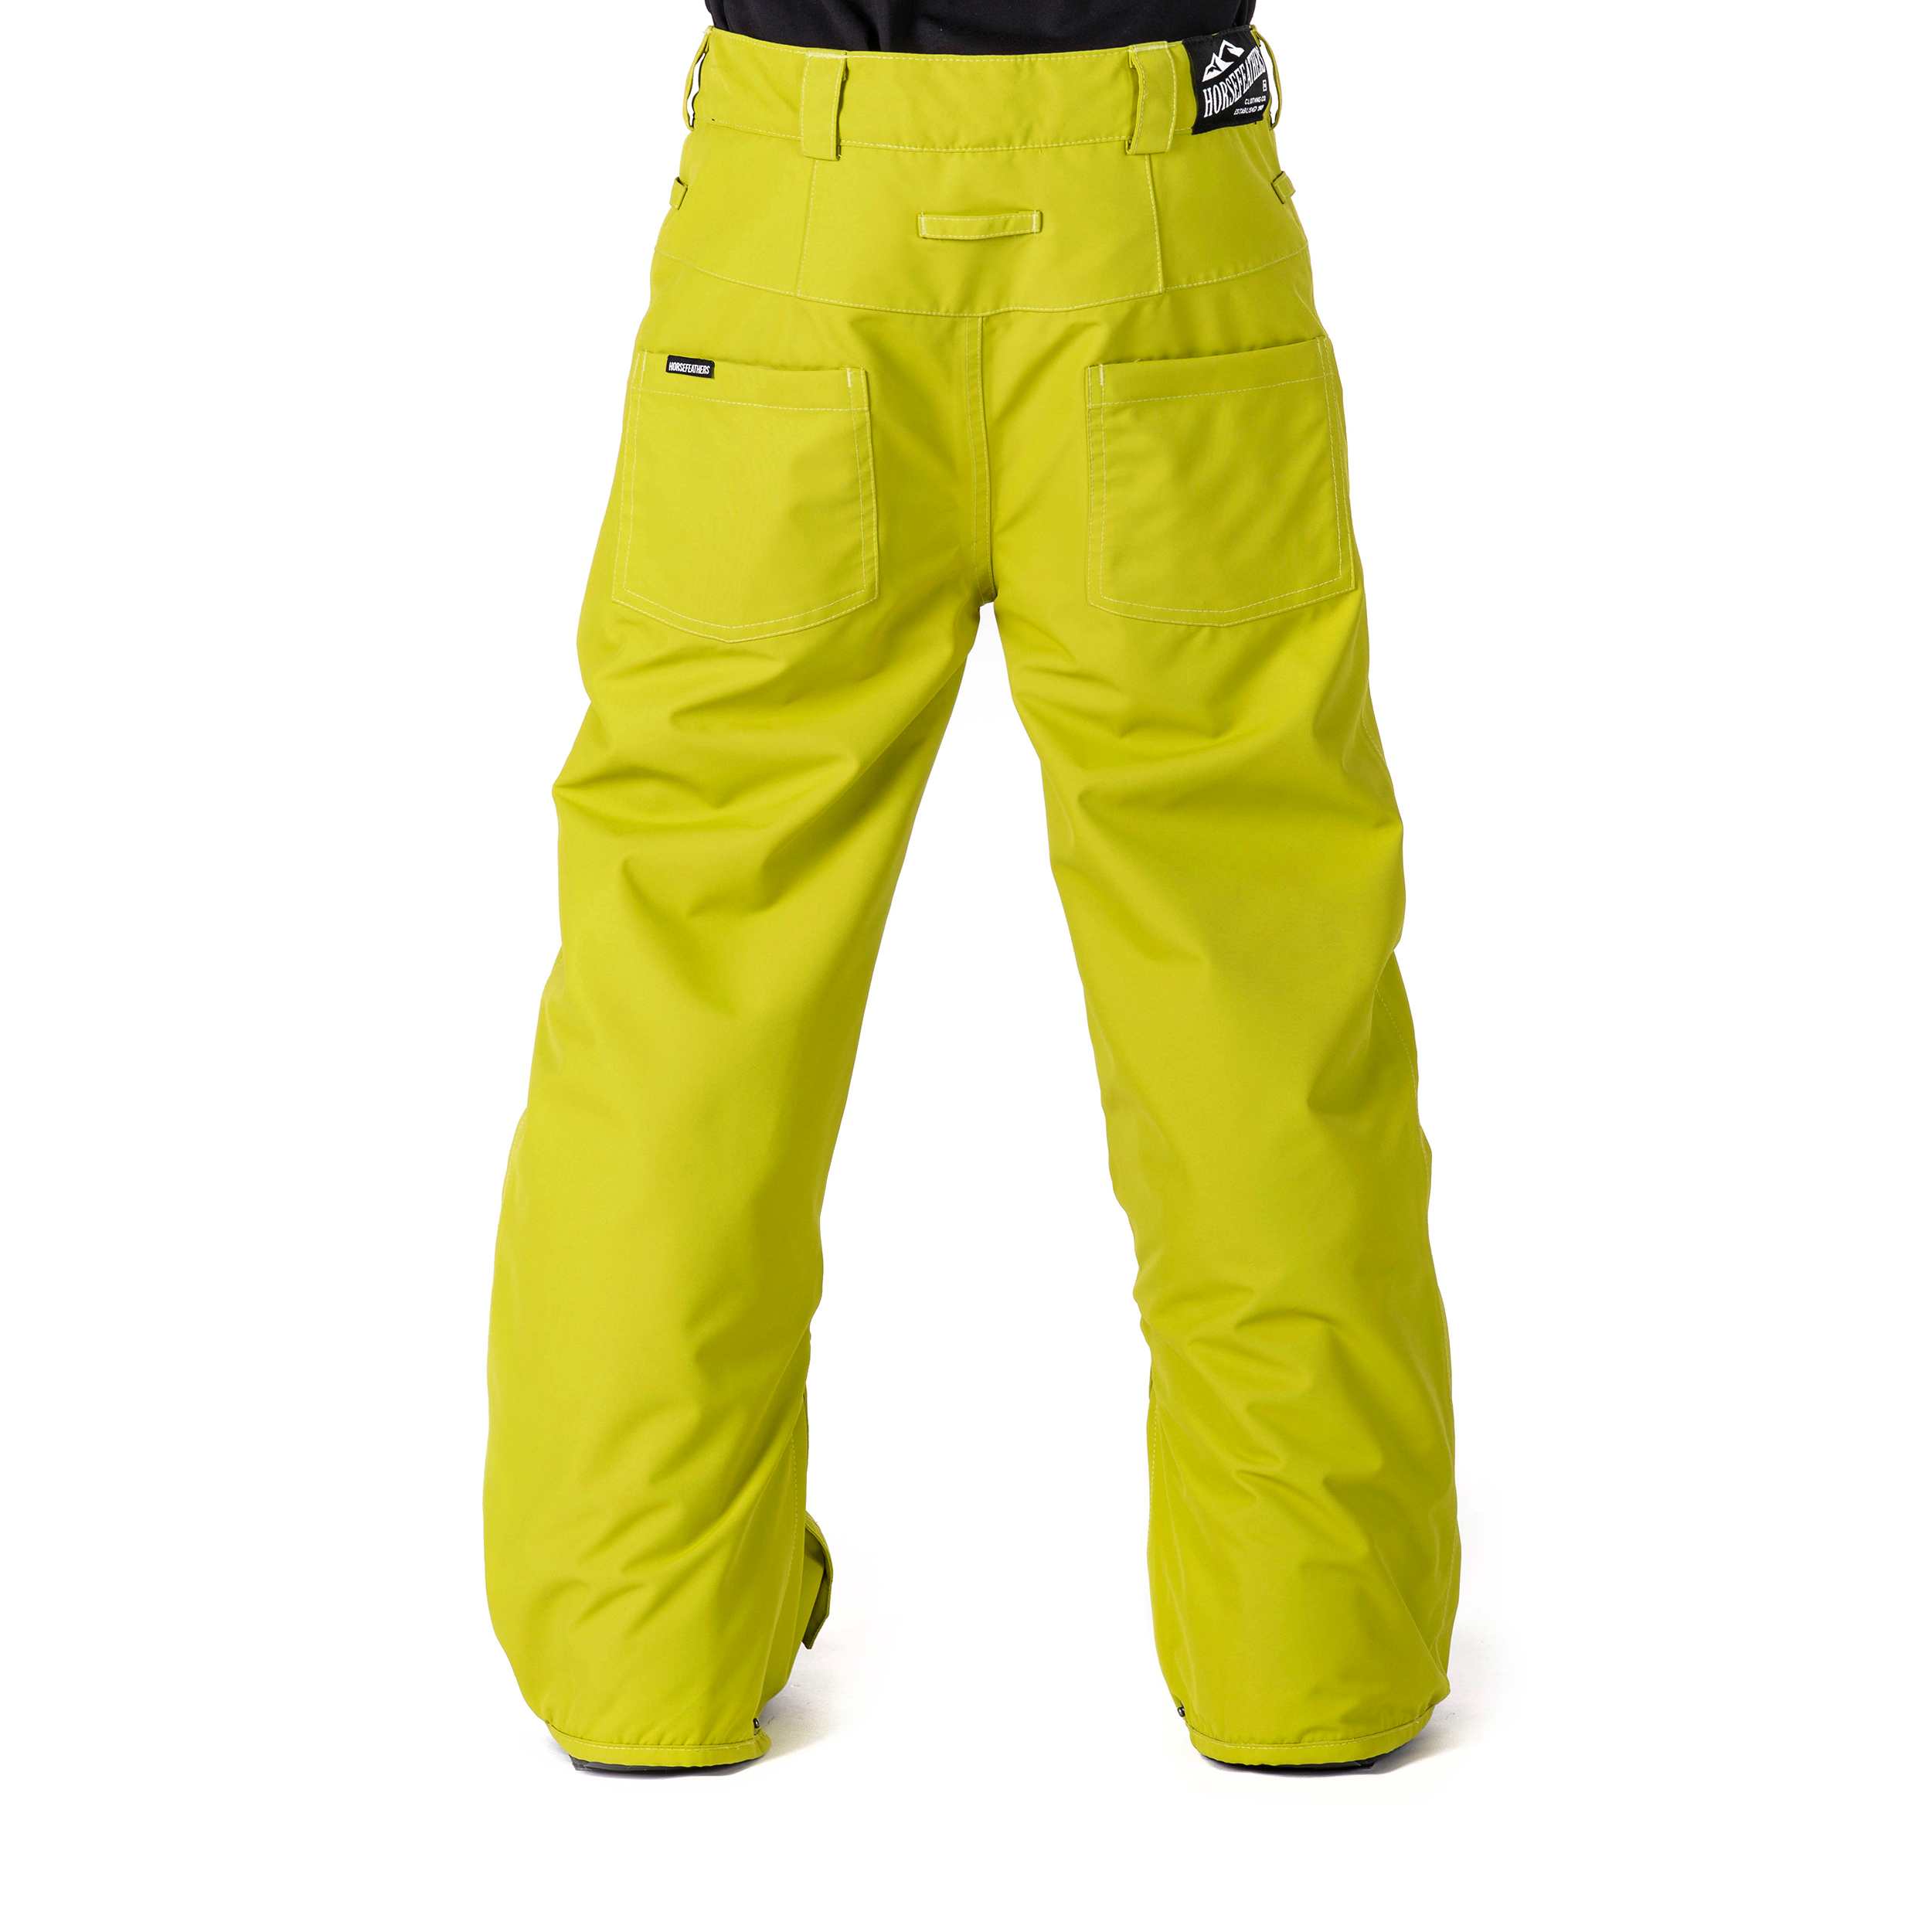 Chlapecké lyžařské/snowboardové kalhoty